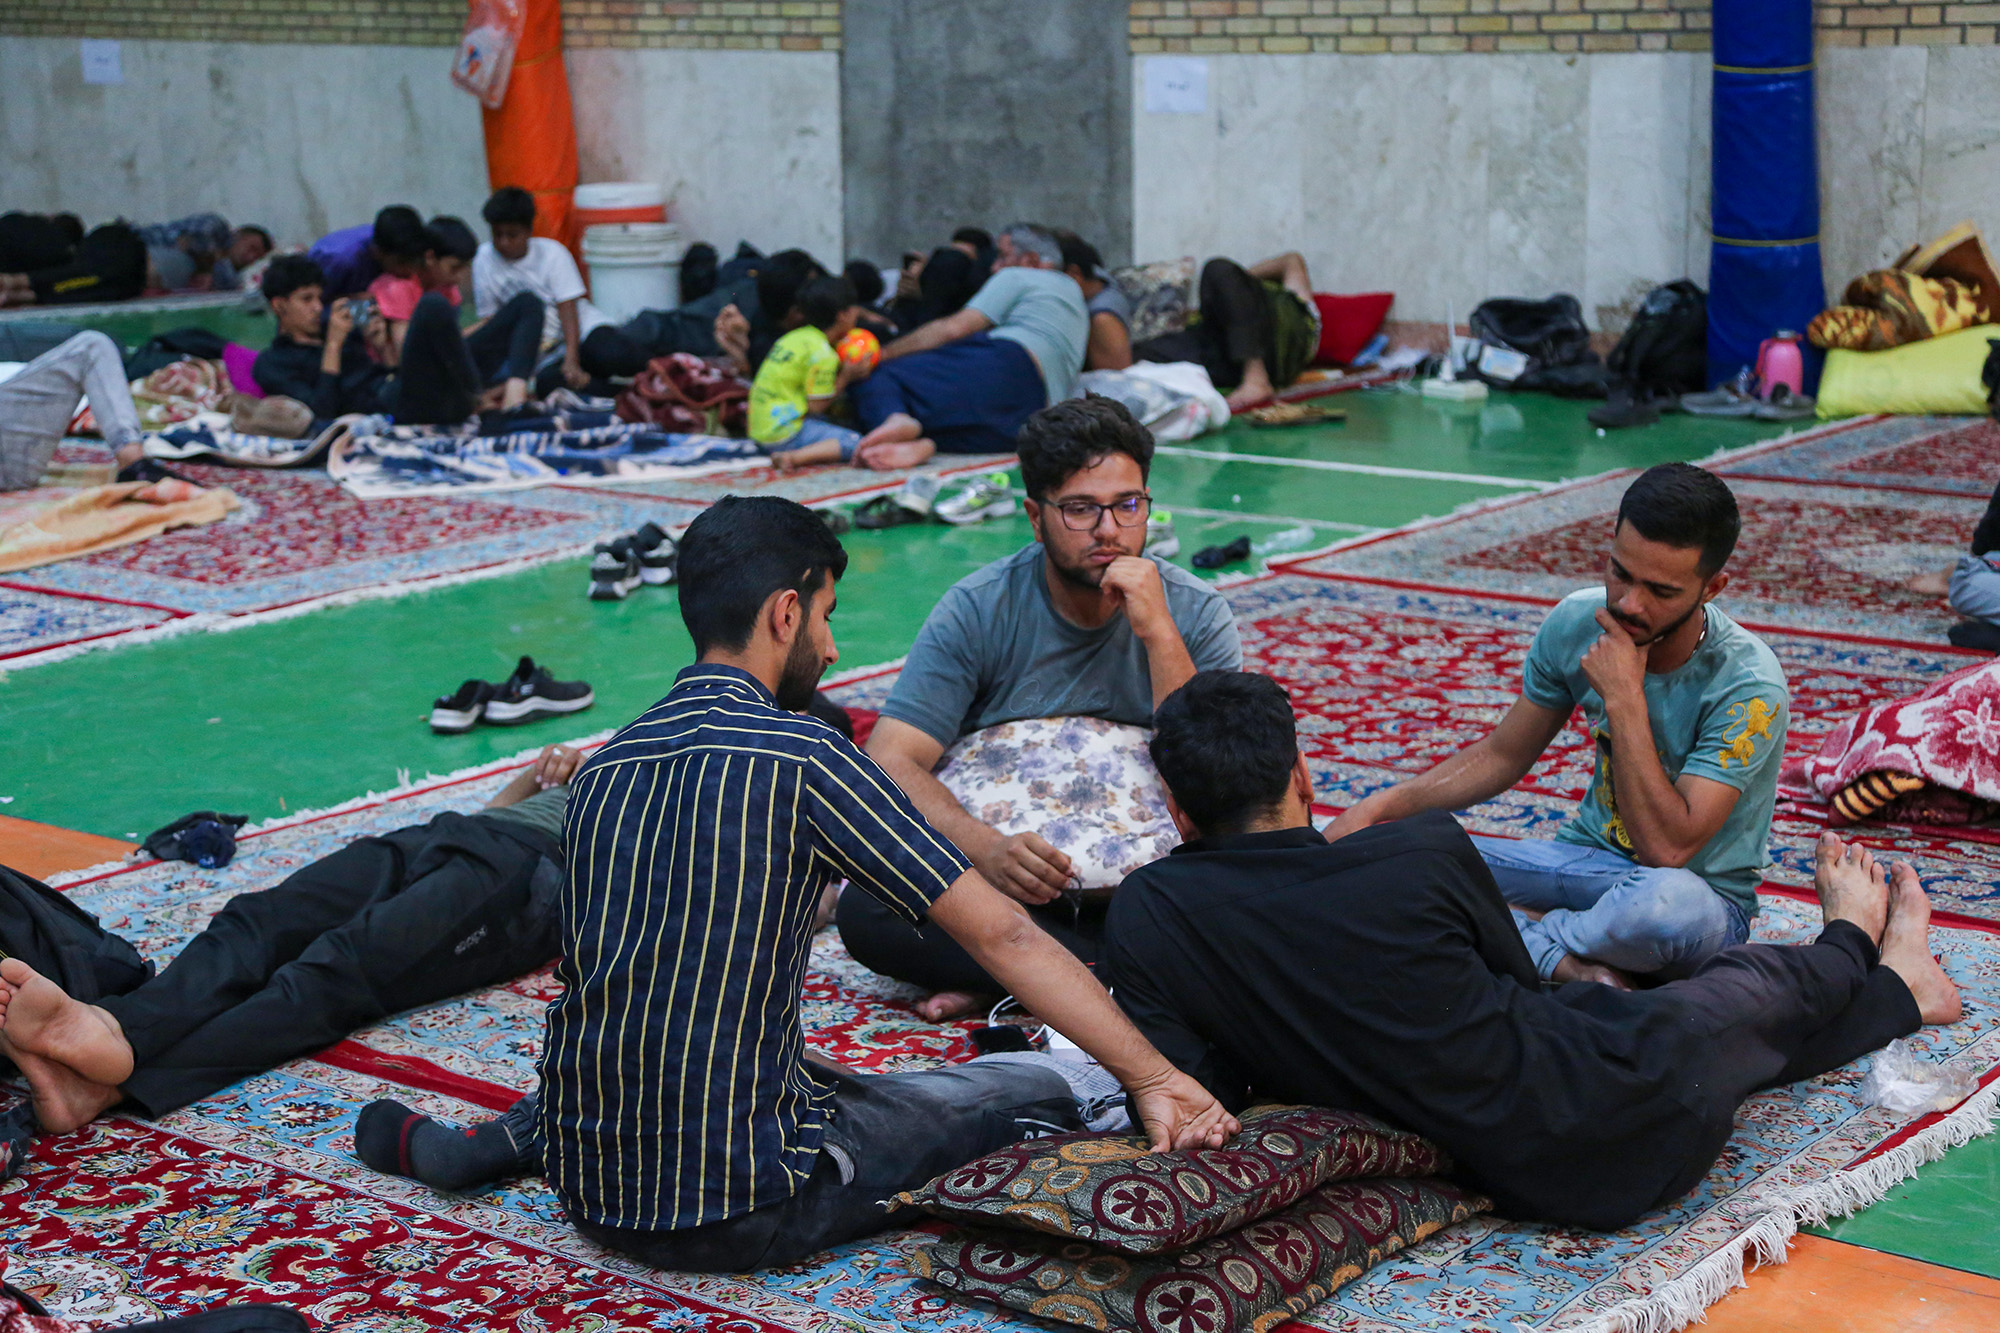  گزارش تصویری اسکان زائران پیاده در فضاهای ورزشی خراسان رضوی 2 